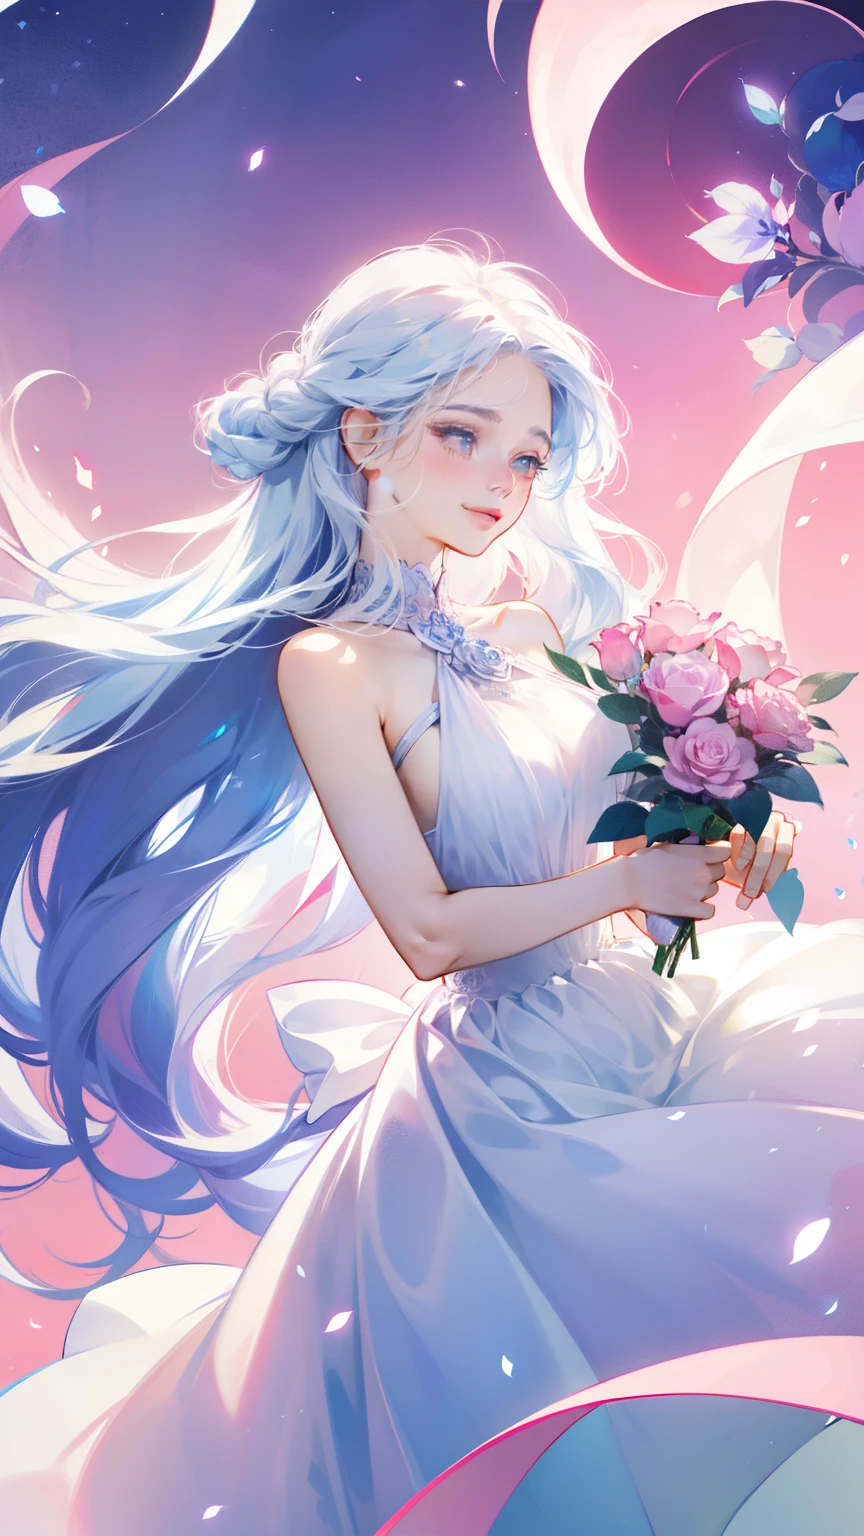 Ein 25-jähriges Mädchen trägt eine blaue Rose, lange Haare, Weißes ärmelloses Kleid, holding a Rosa rose. Den Duft der Blume riechen, Helle Fantasie, Surrealismus, Michael Cormac, Rosa, monochromatische Ruhe, Helle Atmosphäre, Sonnenschein, Glück, Glück, und ein Lächeln,